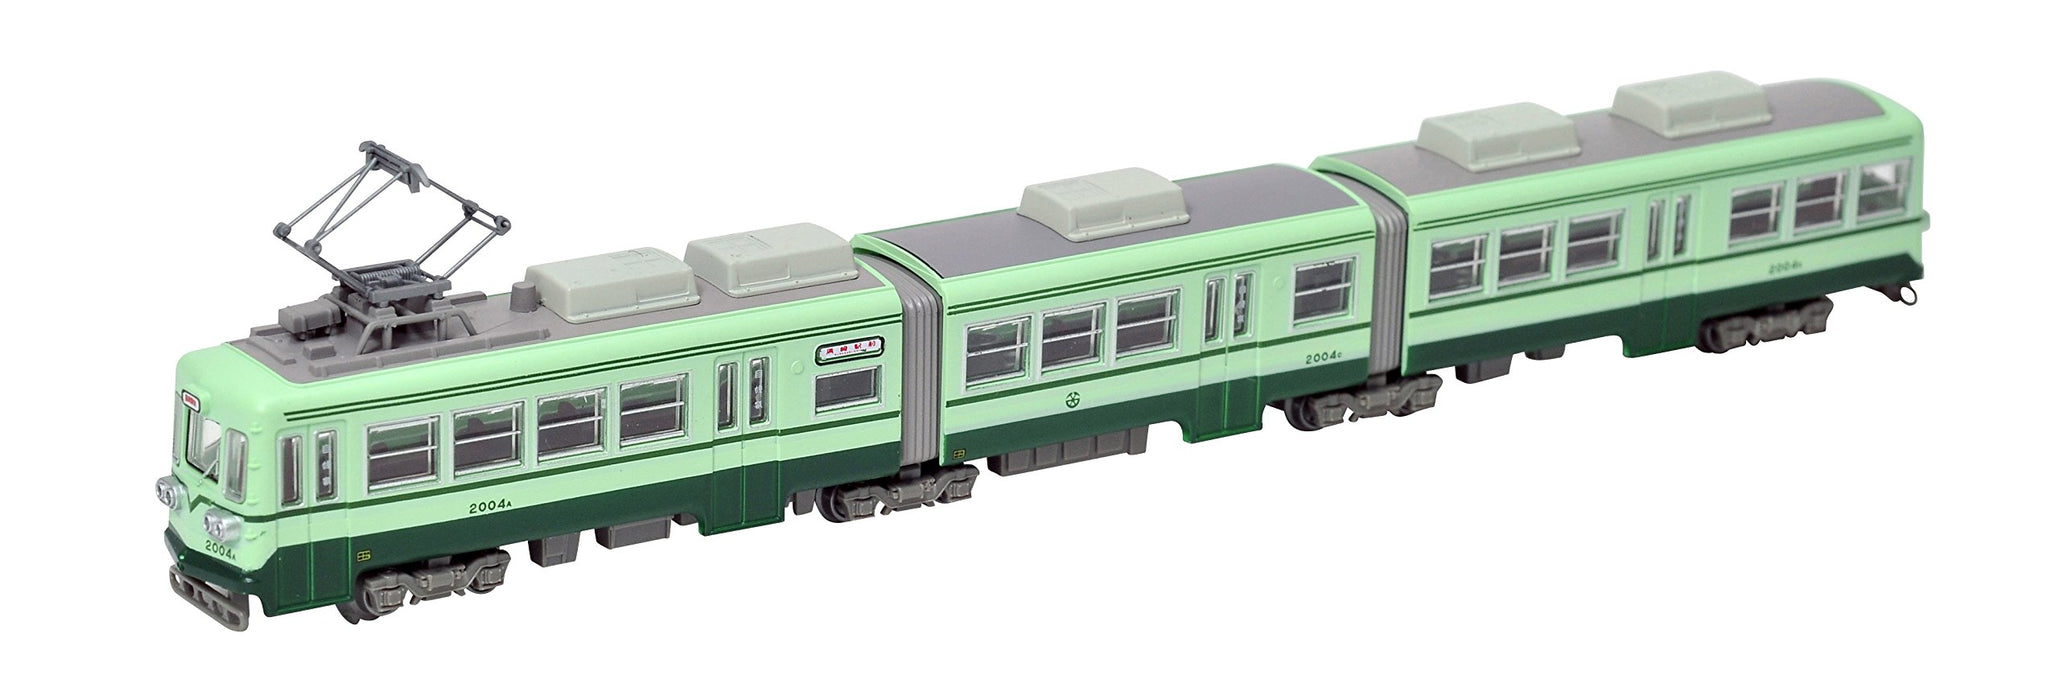 La collection ferroviaire La collection ferroviaire Chikuho Electric Railway Type 2000 No. 2004 Fournitures de diorama vert (production limitée de premier ordre du fabricant)